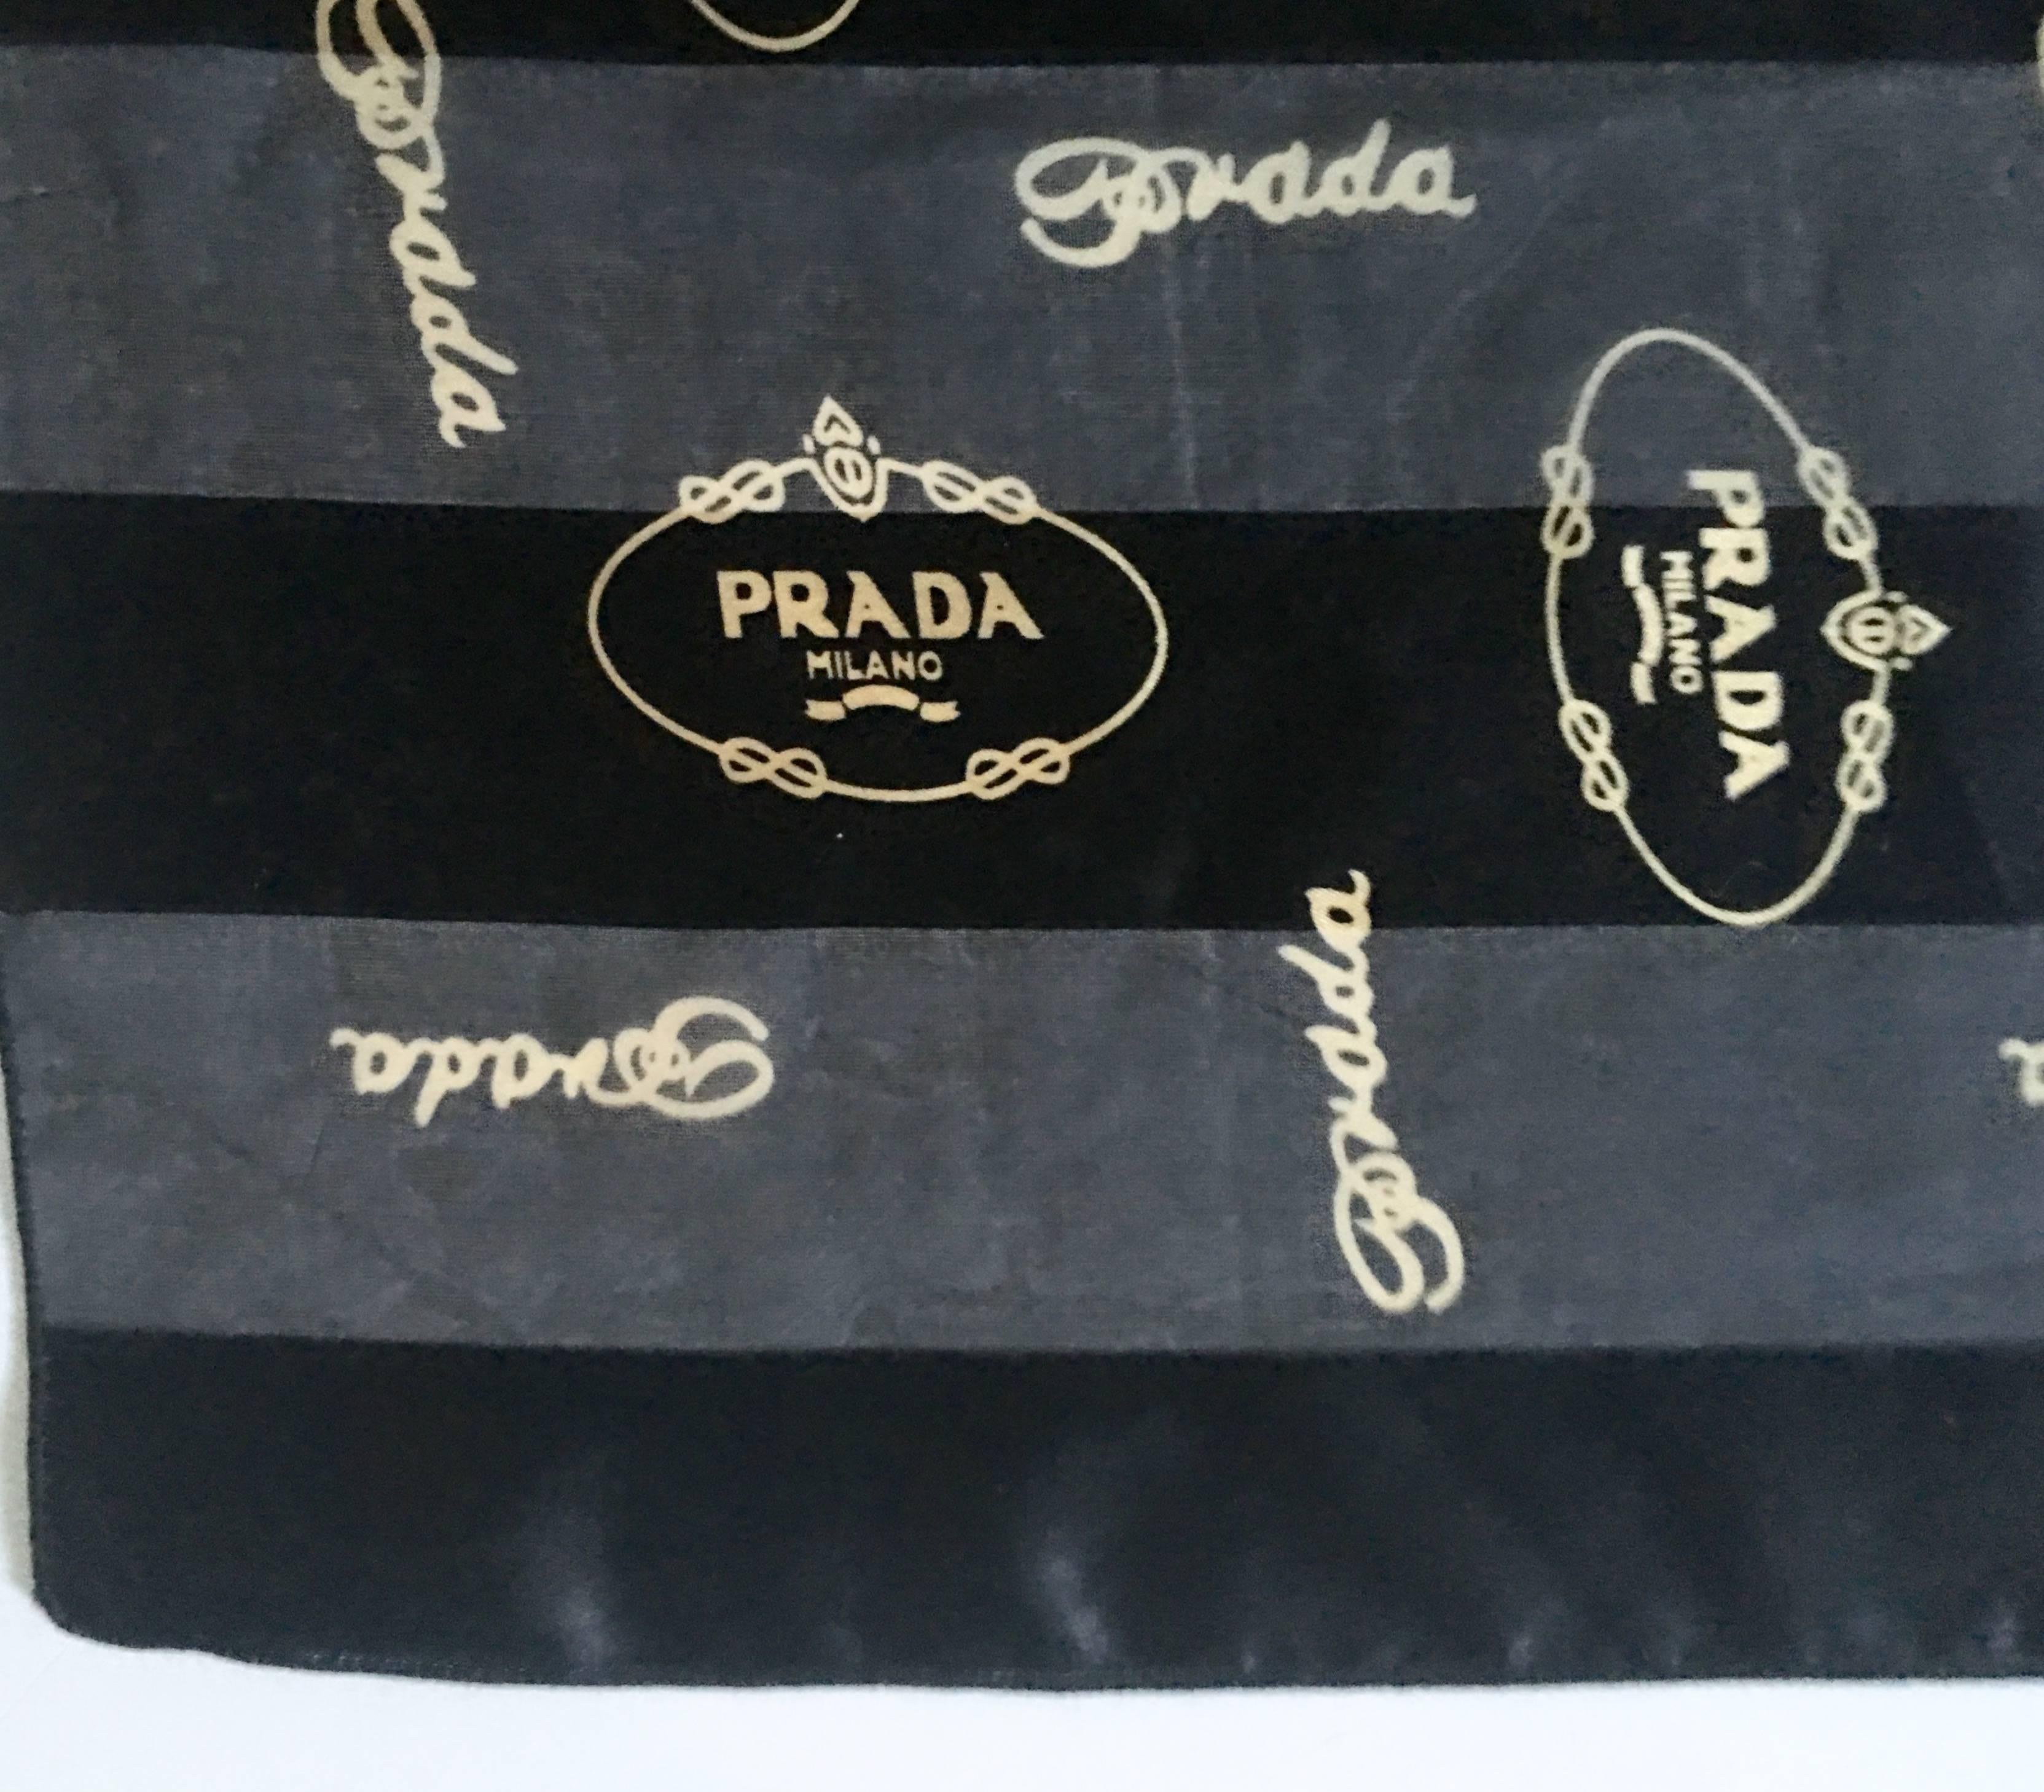  Prada Milano - Écharpe en mousseline de soie rayée noire et or avec logo, vintage Unisexe 